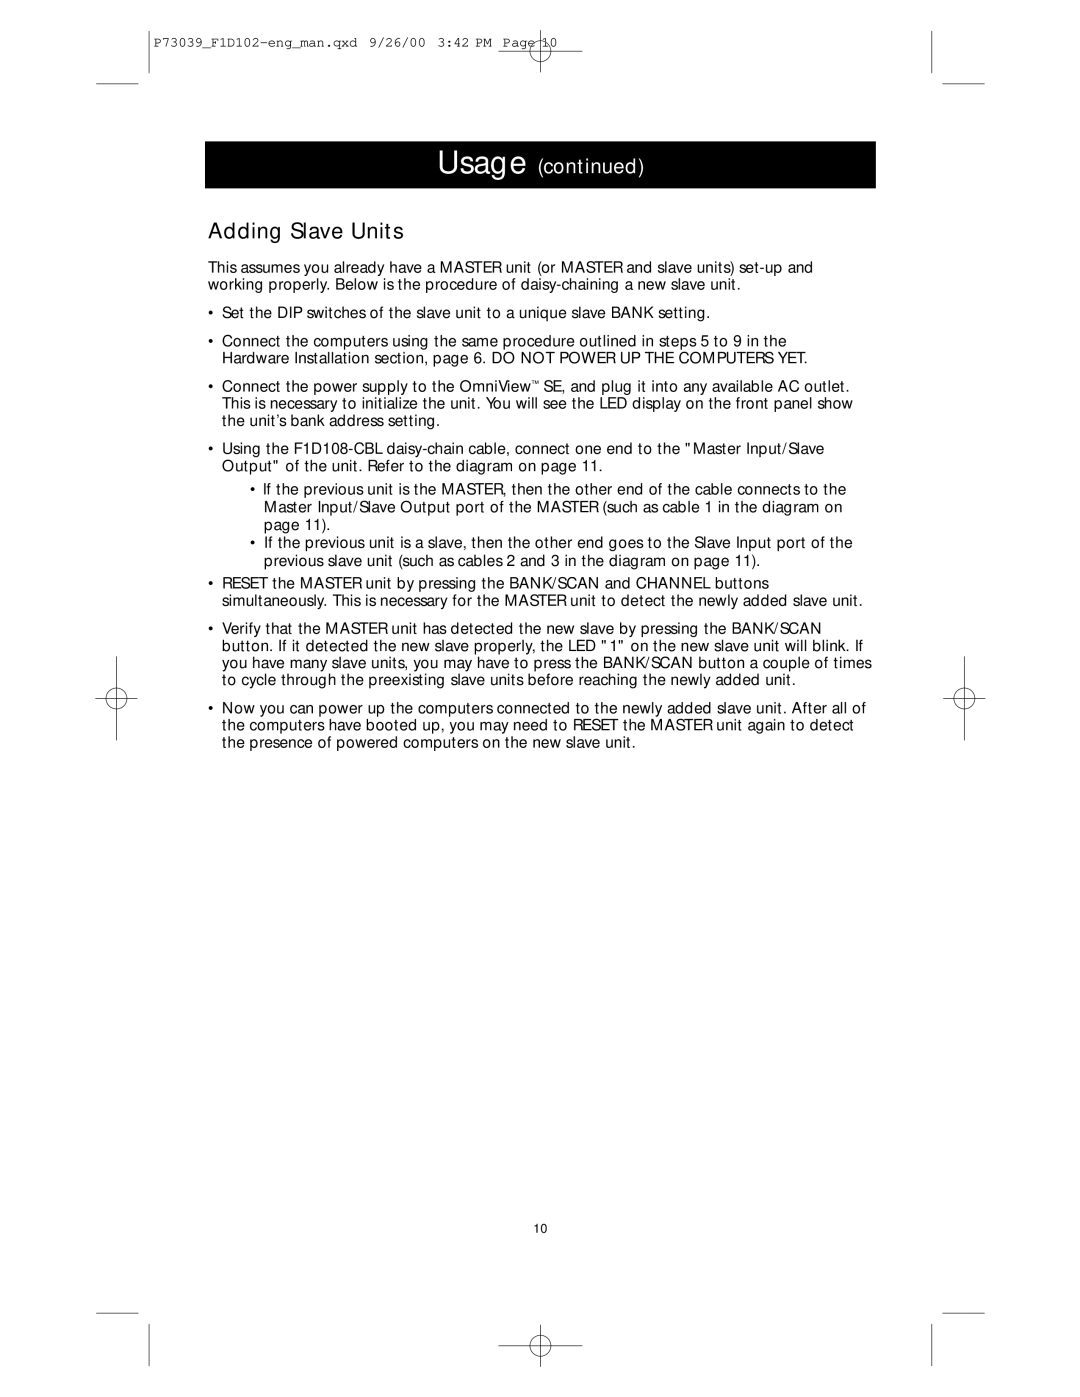 Belkin SE 2-Port user manual Adding Slave Units, Usage continued 